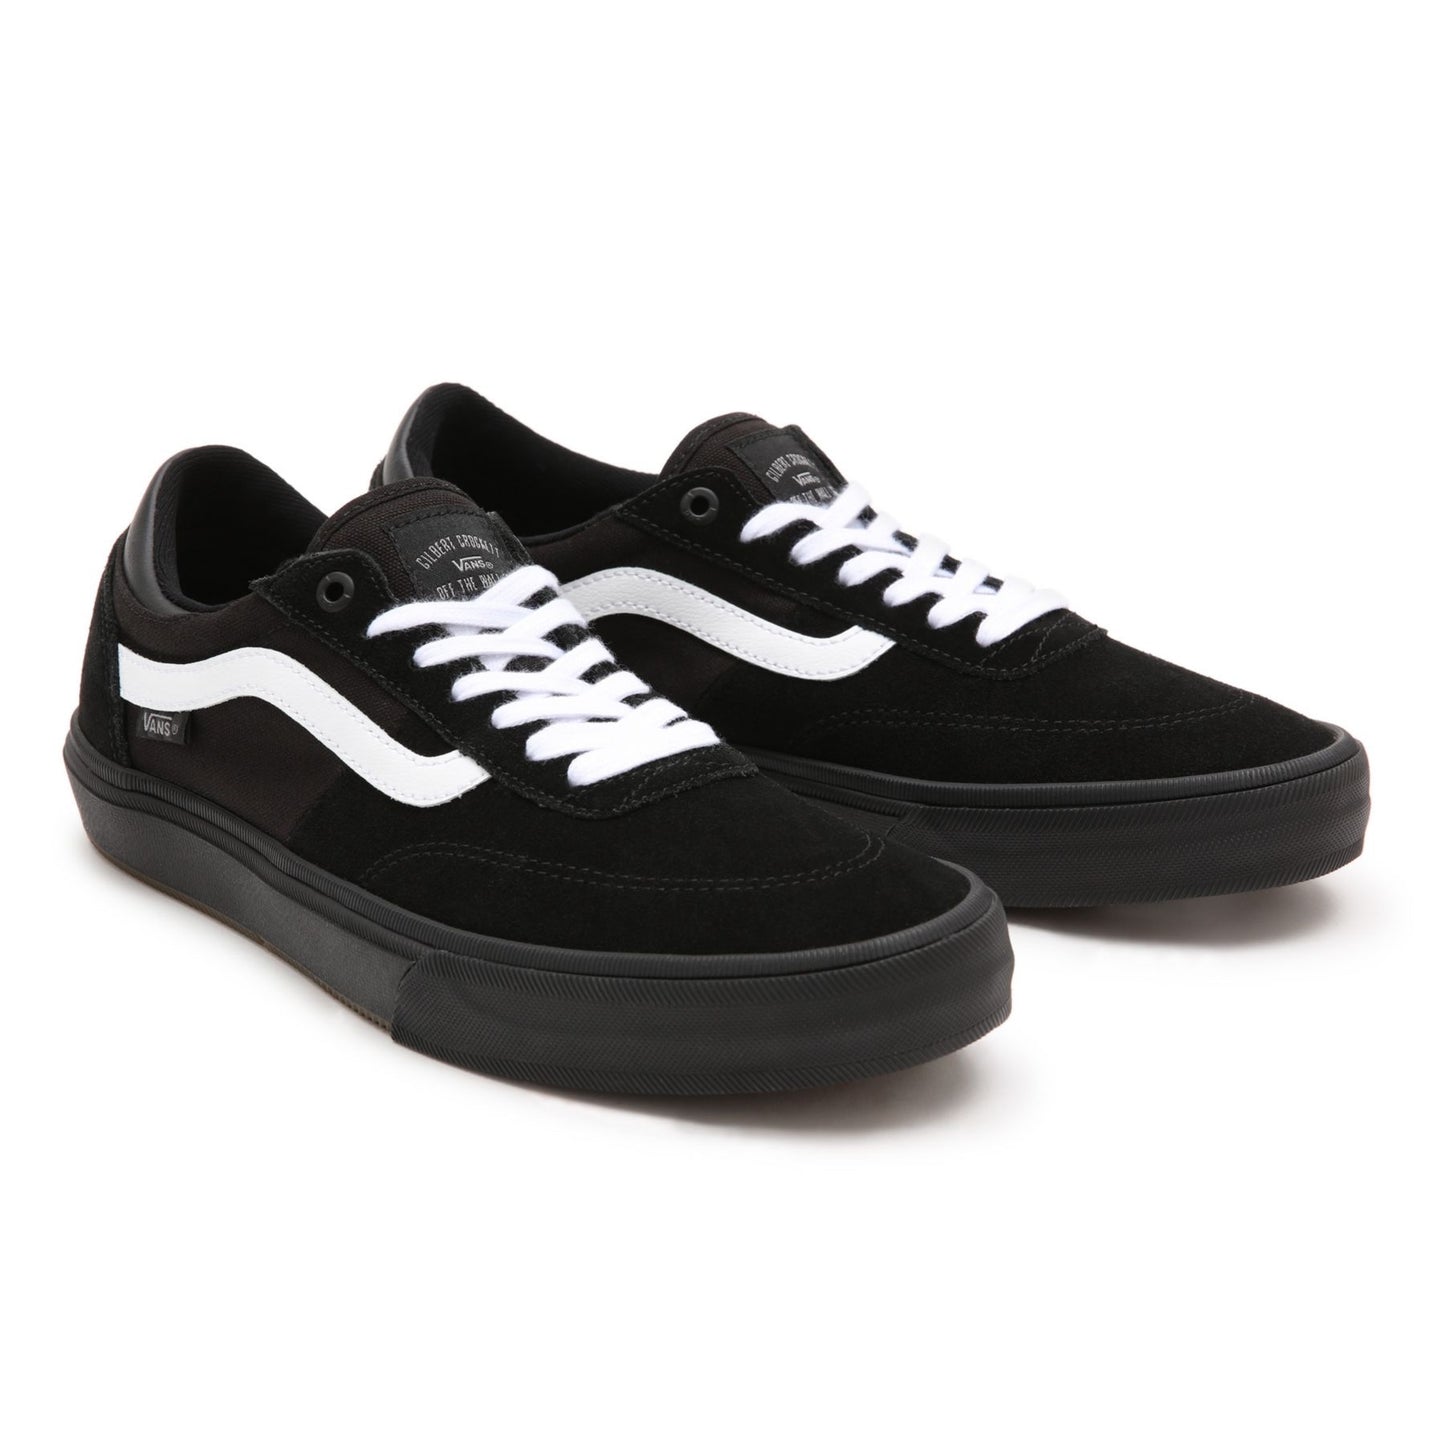 Vans 'Gilbert Crockett' Skate Shoes (Blackout)